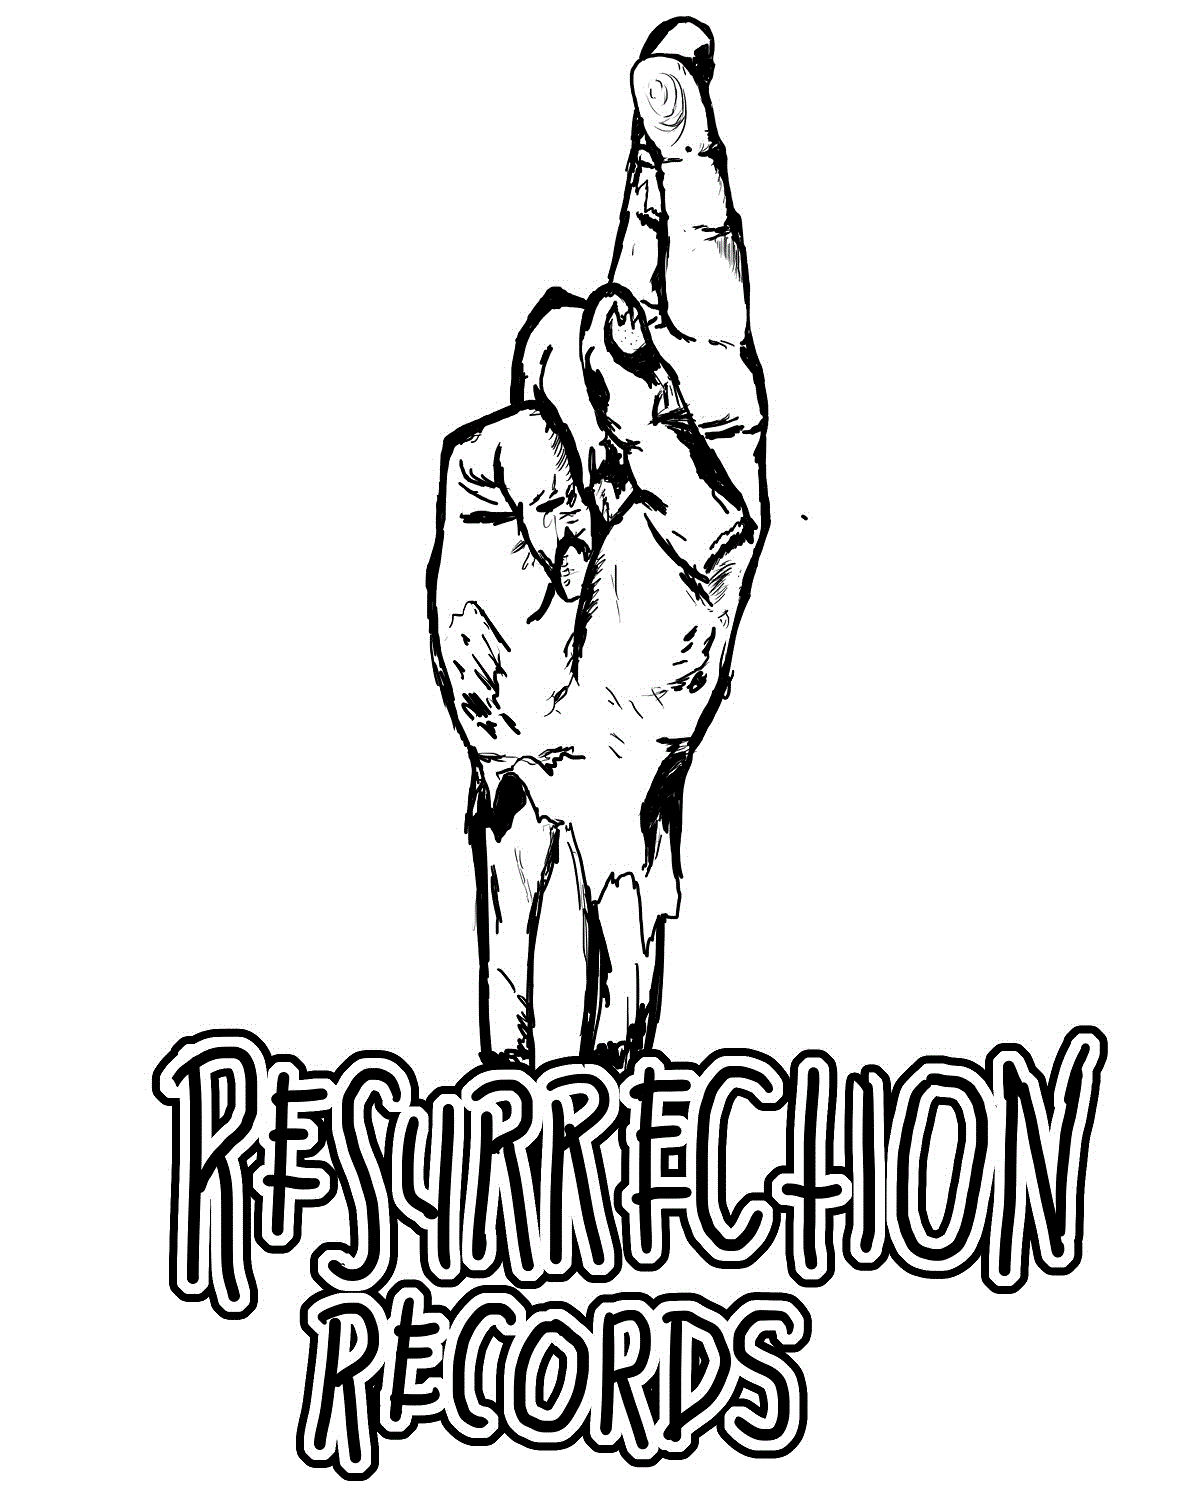 Resurrection Records 2.25" Button - "Resurrection" Logo